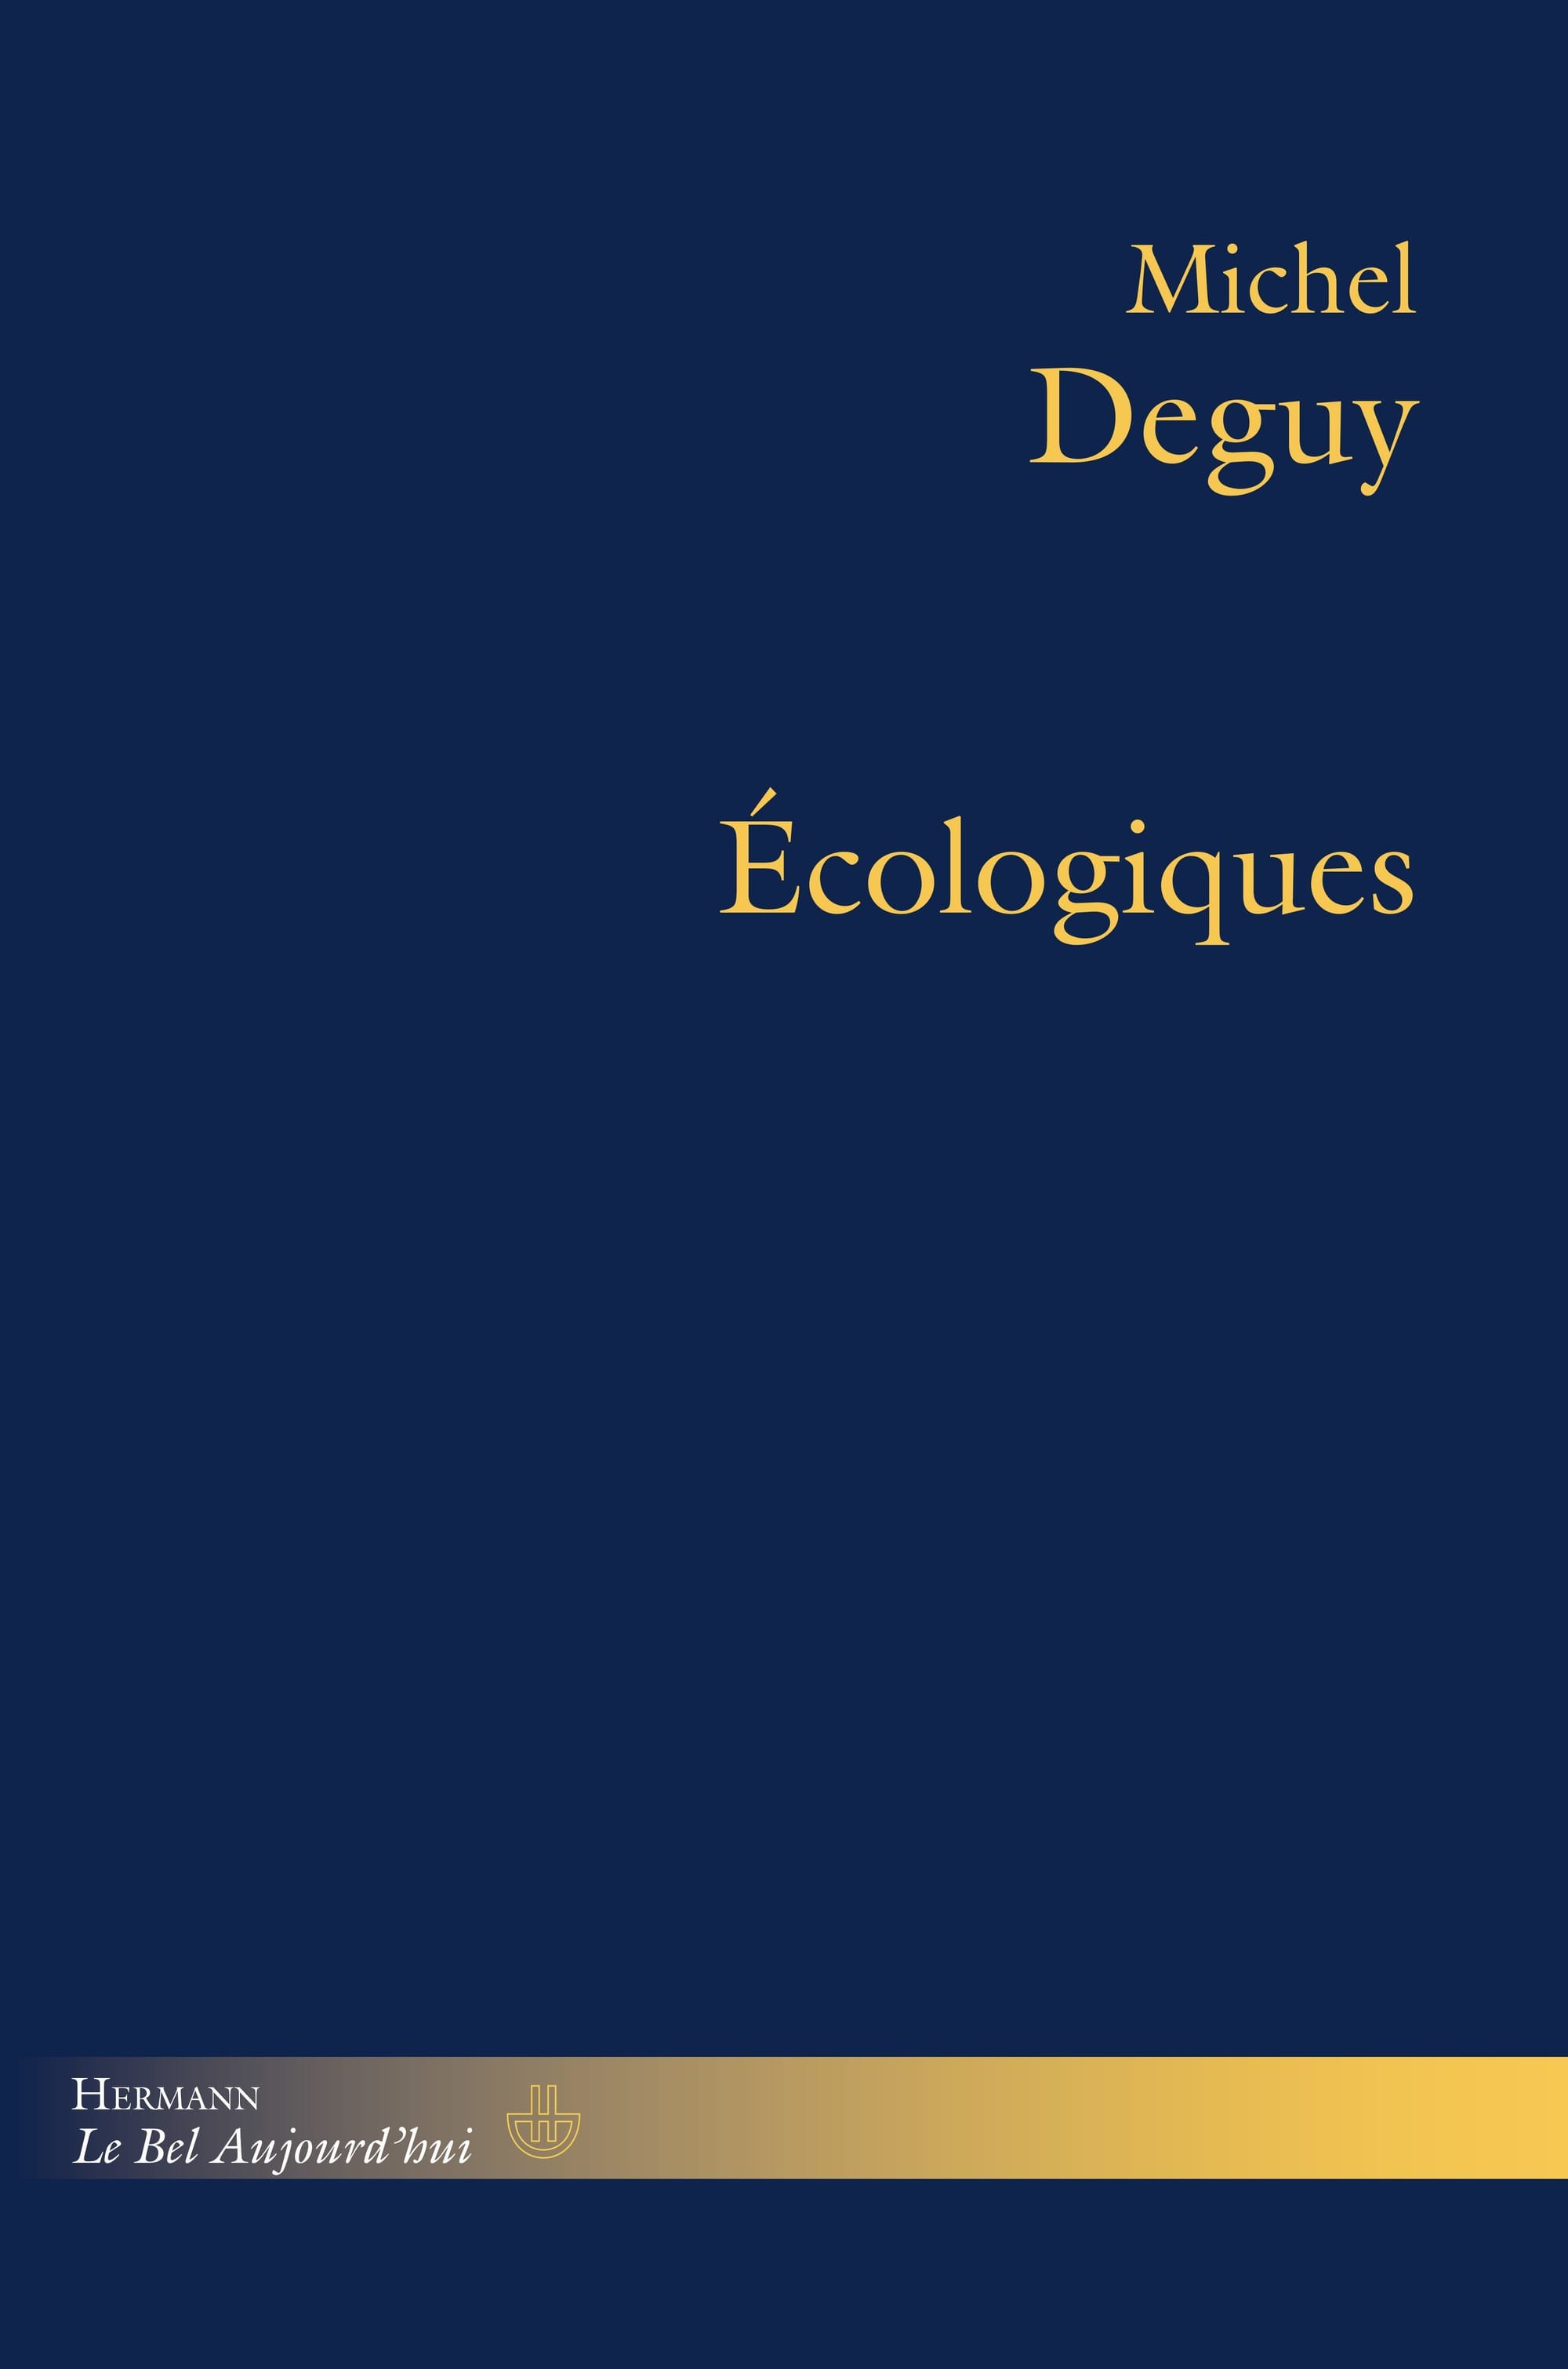 ESSAI - La poésie comme médiatrice de l'écologie : Michel Deguy, "Écologiques"